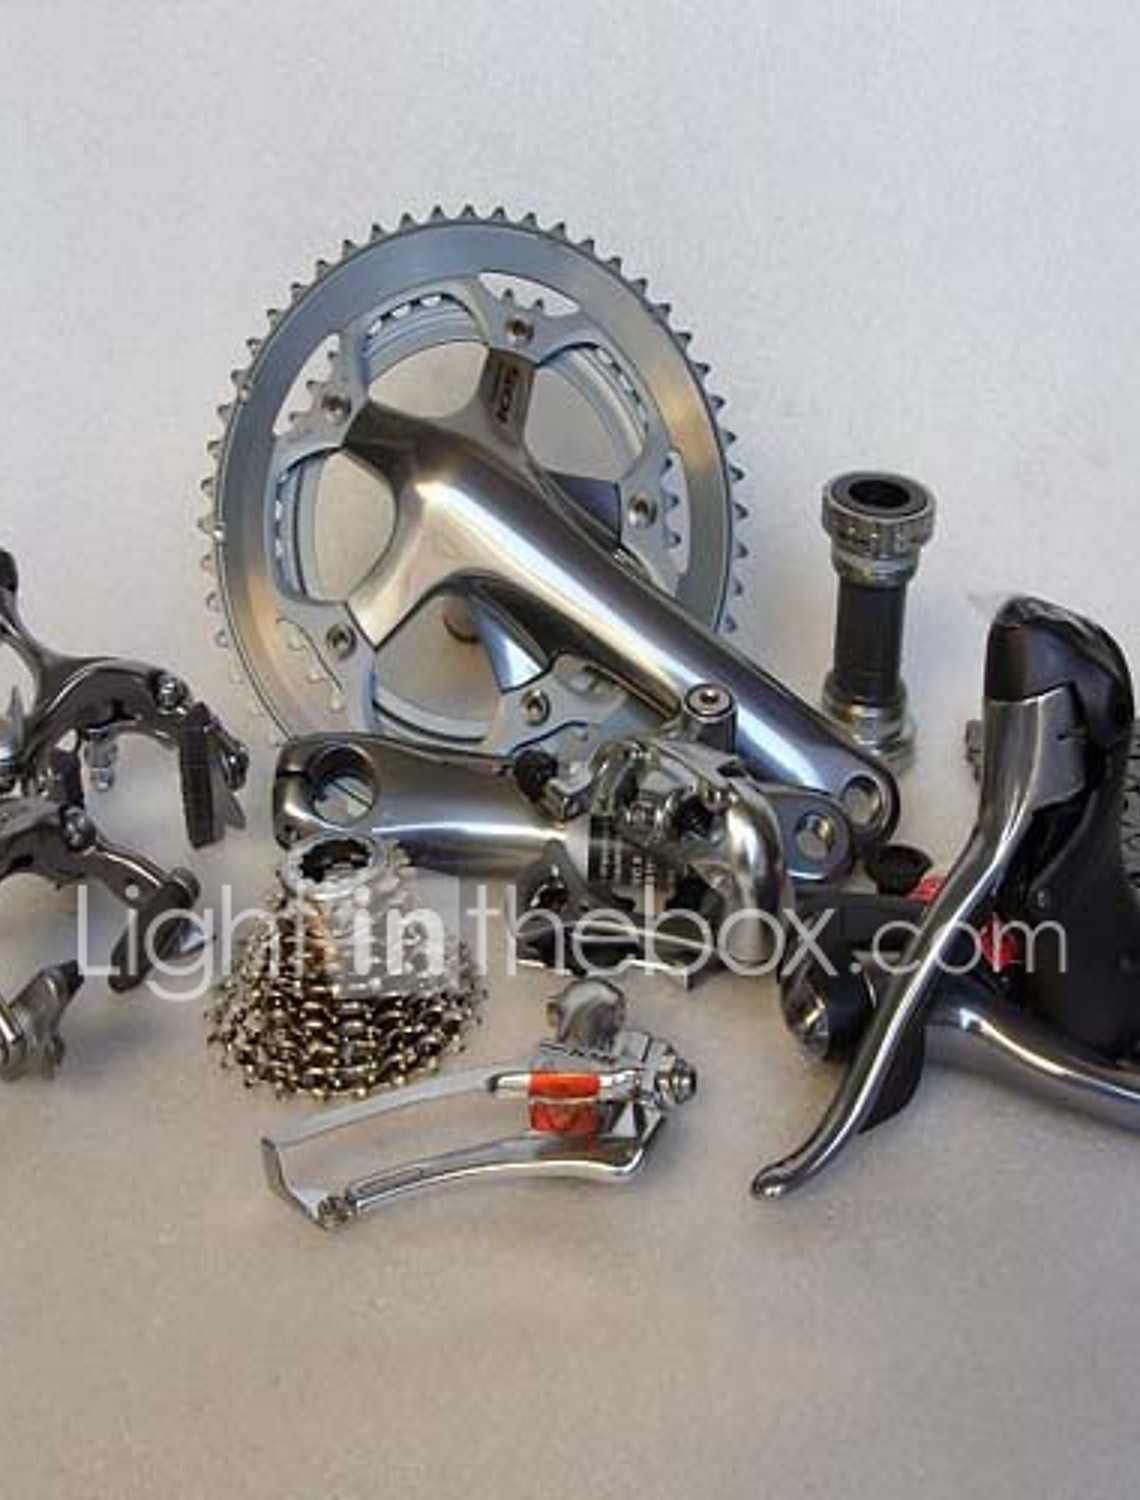 2008 Shimano 105 5600 Group Set Bike Parts 35004 2020 679 99